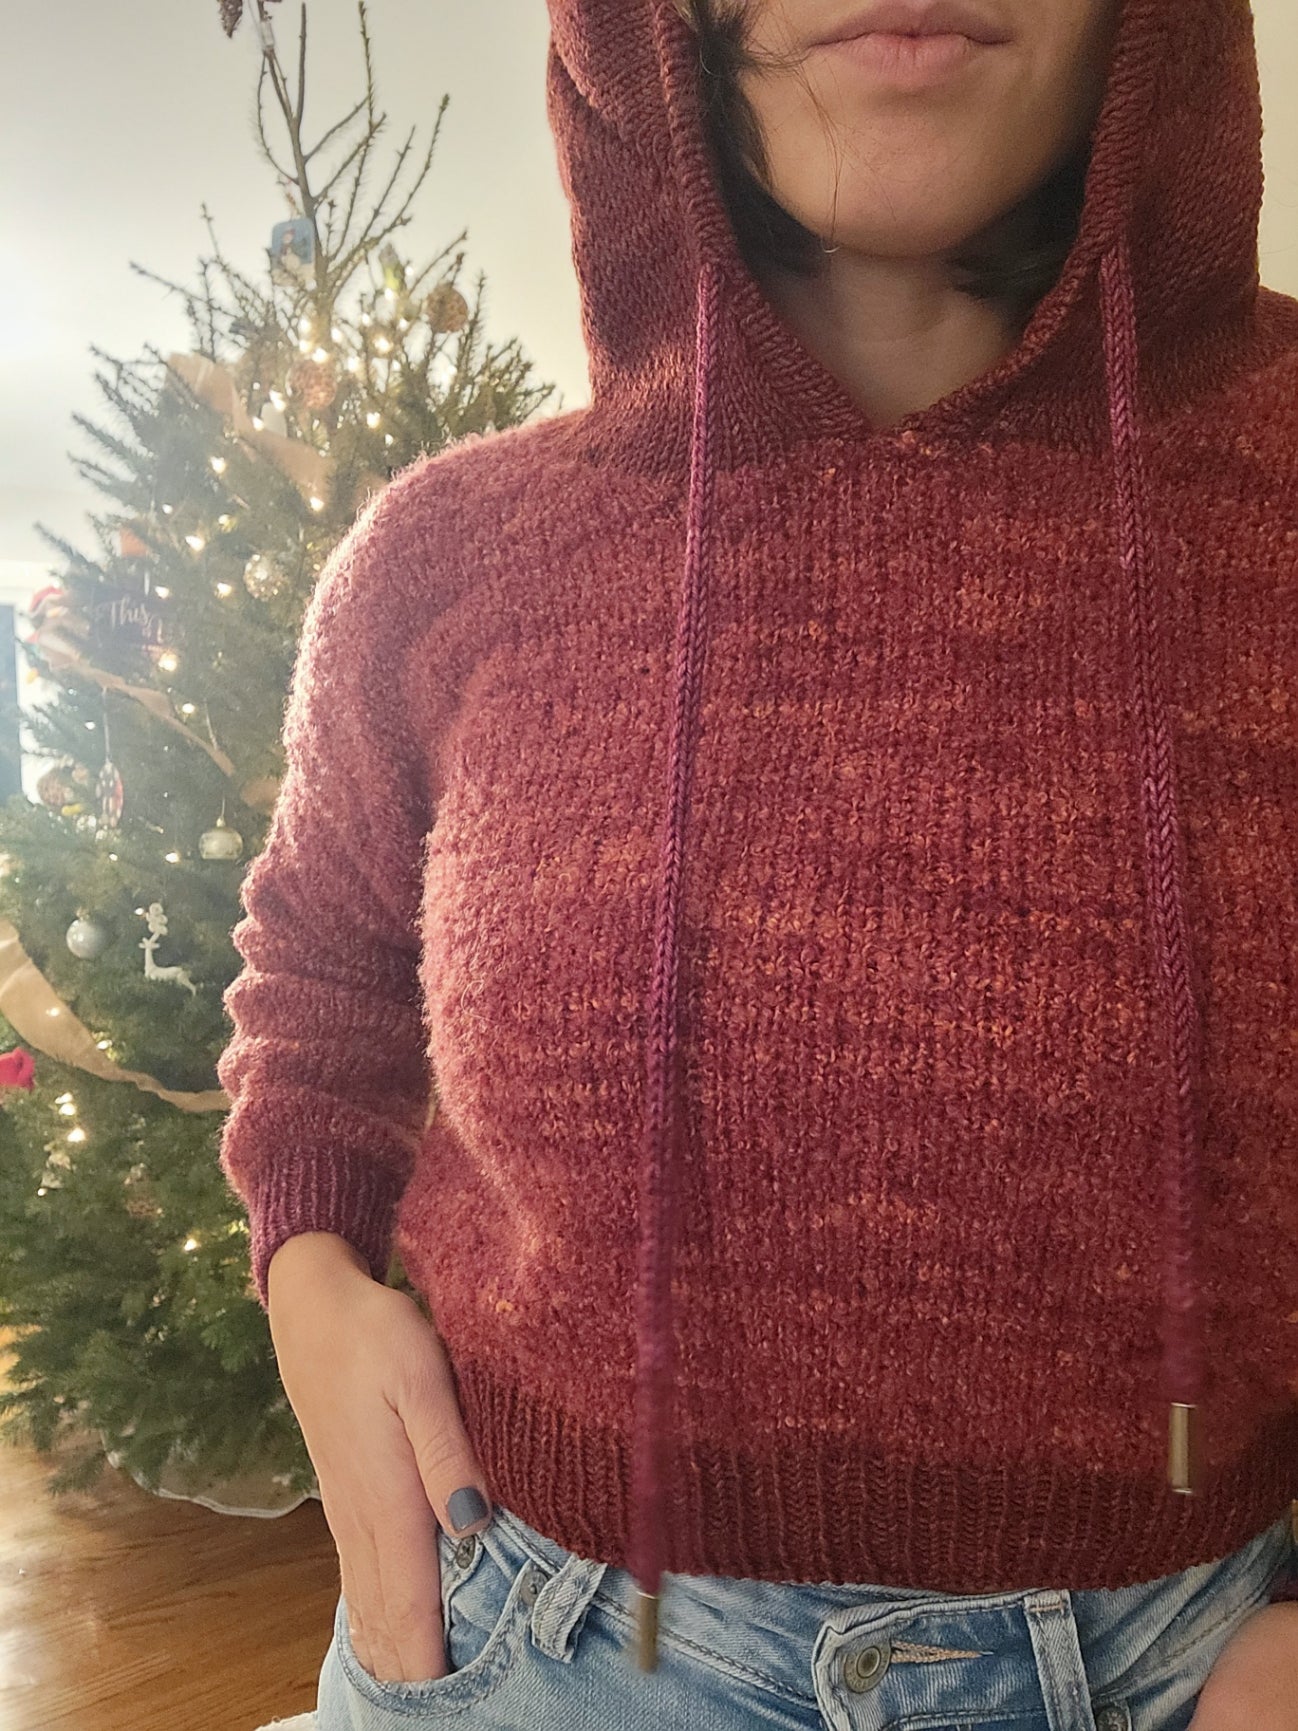 Second Ave Sweatshirt - Knitting Pattern